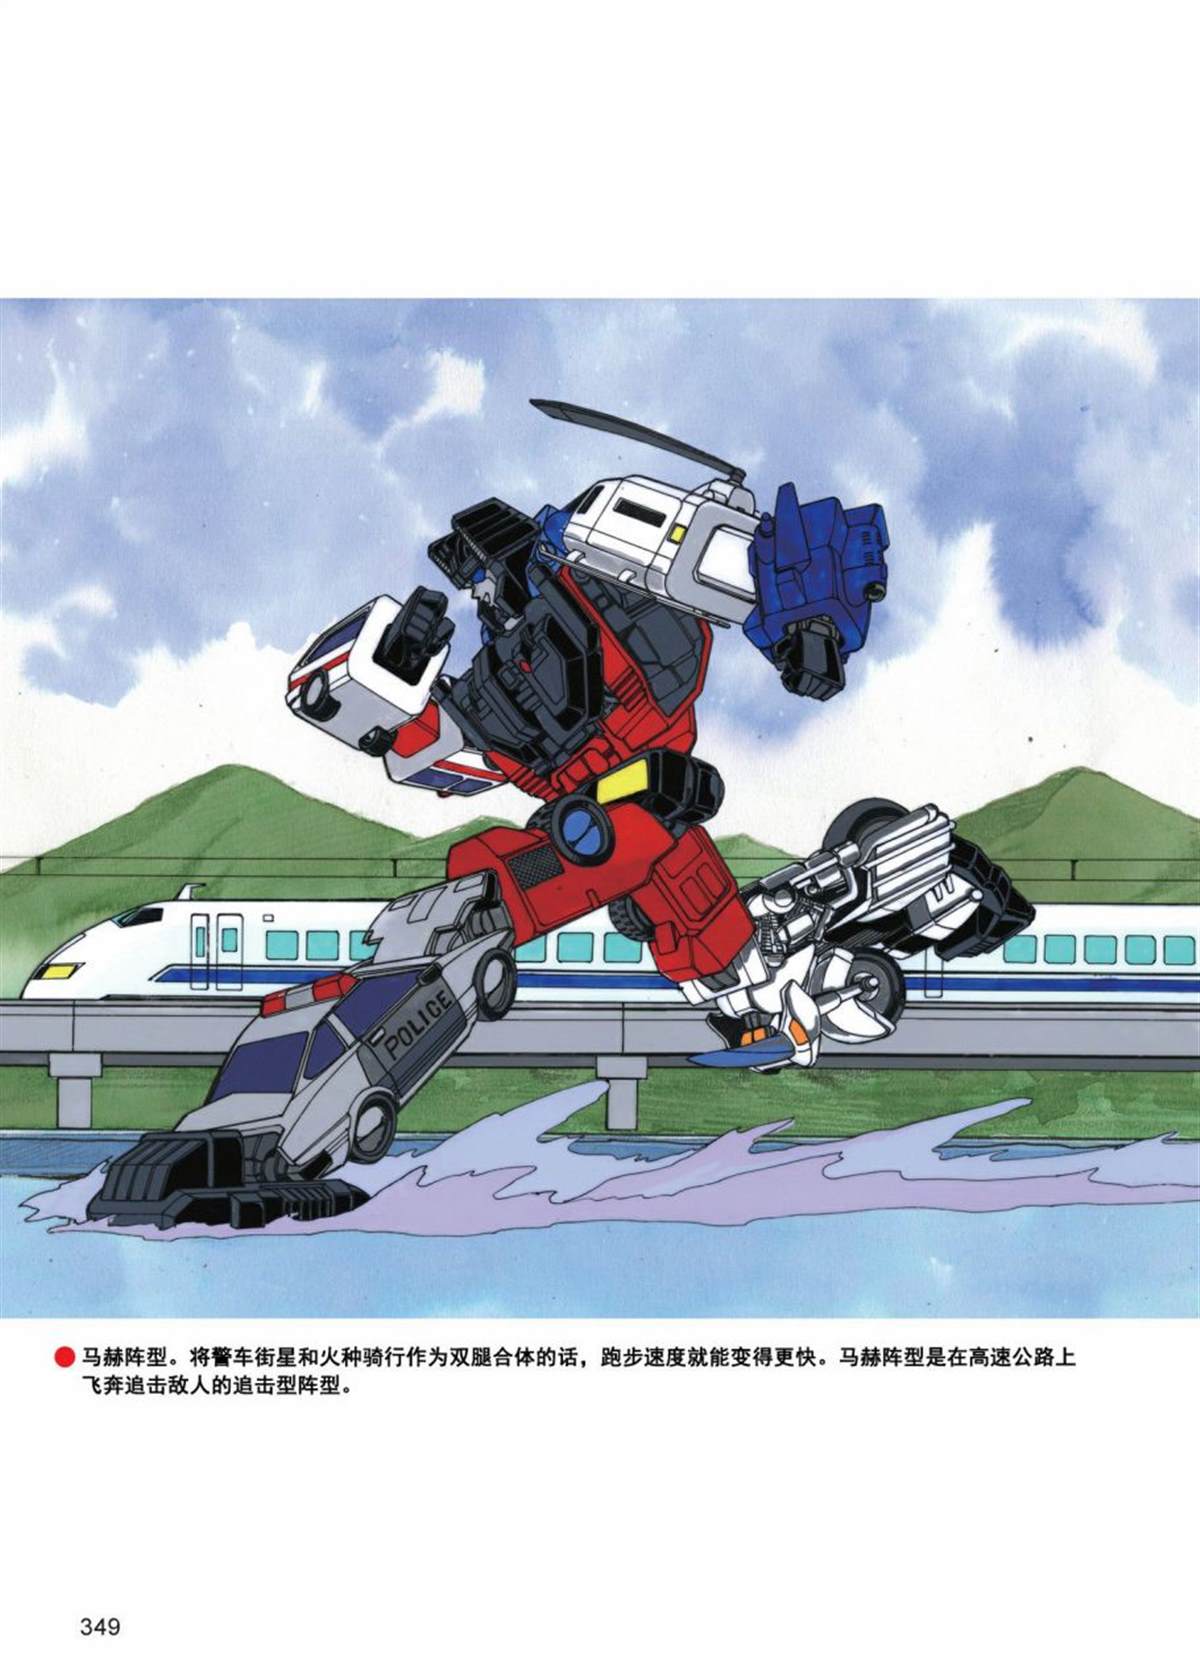 變形金剛日版G1雜誌插畫 - 《戰鬥吧！超機械生命體變形金剛：合體大作戰》 - 4